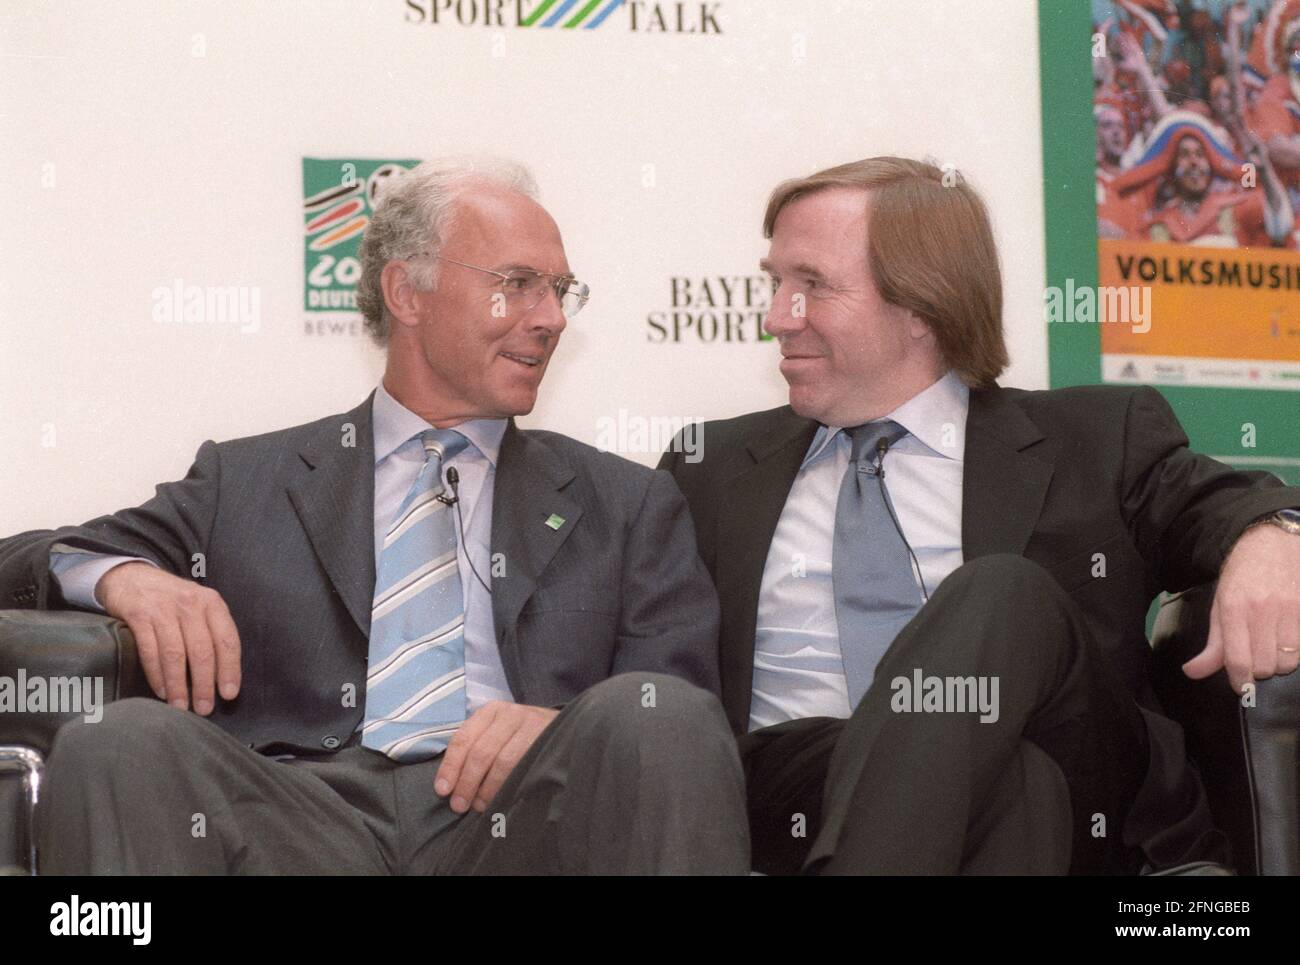 Conférence de presse pour la coupe du monde 2006 le 04.06.1999 à Leverkusen. Franz Beckenbauer (à gauche) et Günter Netzer. [traduction automatique] Banque D'Images